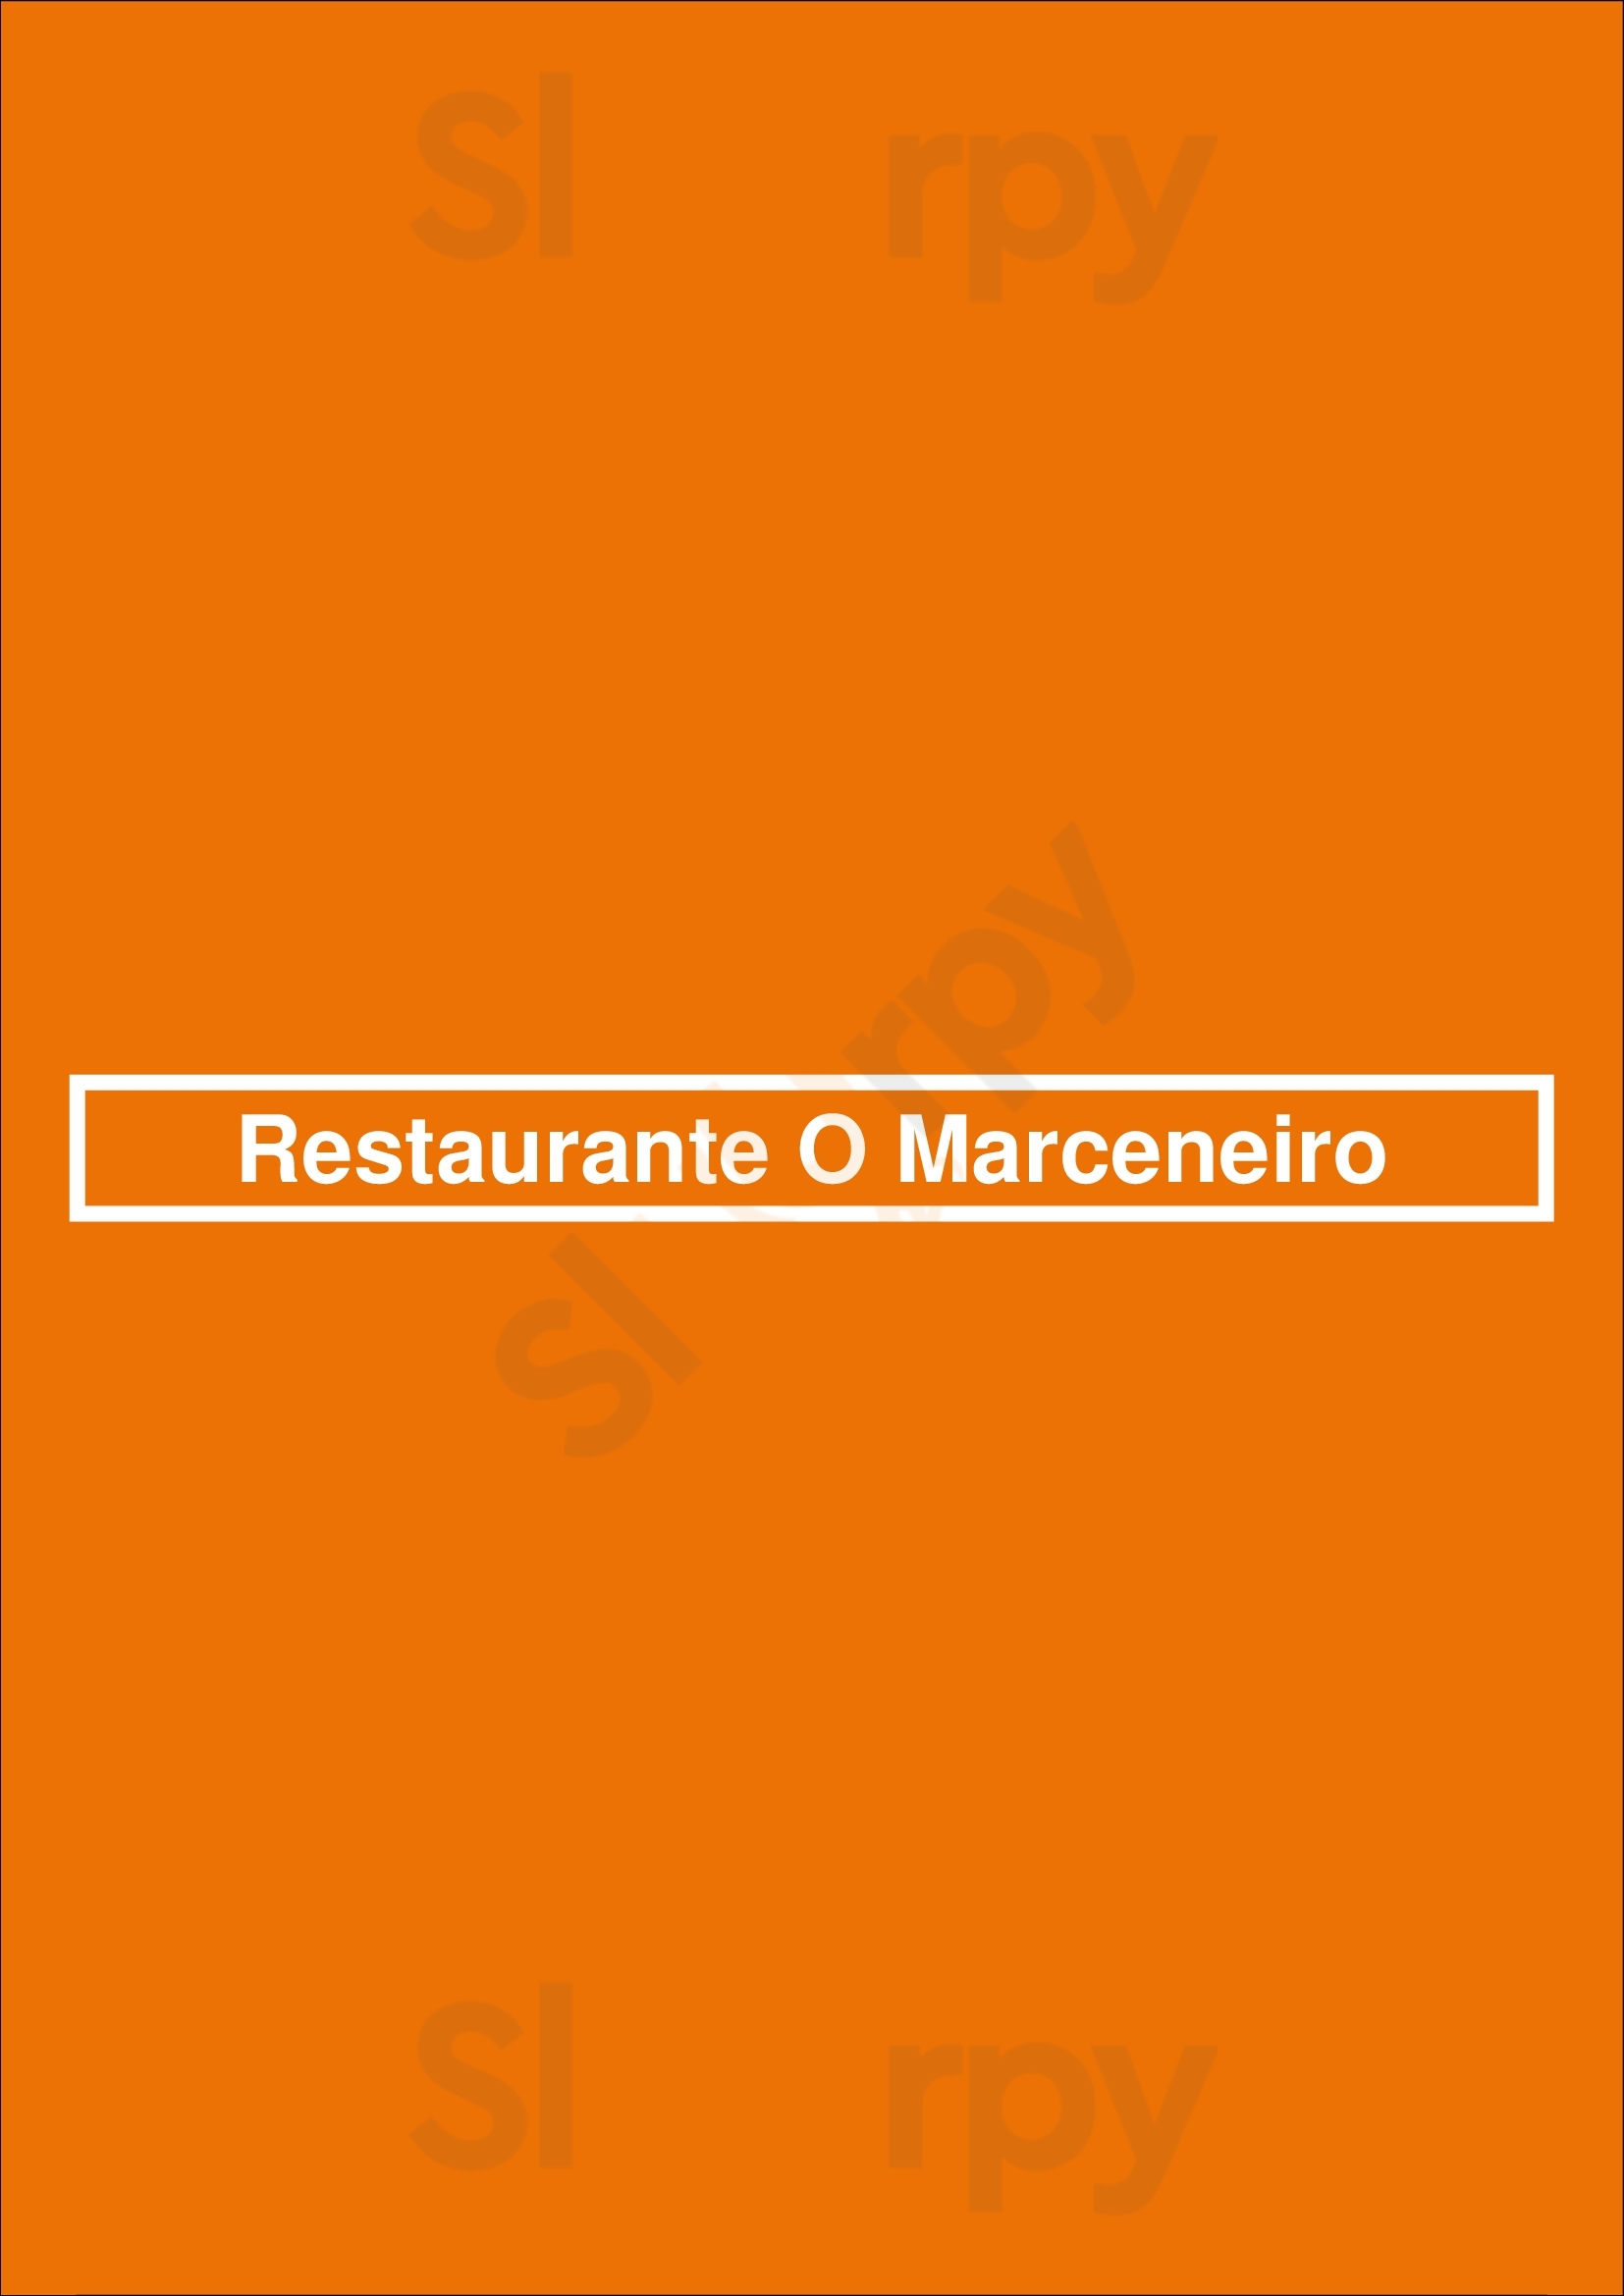 Restaurante O Marceneiro Paços de Ferreira Menu - 1